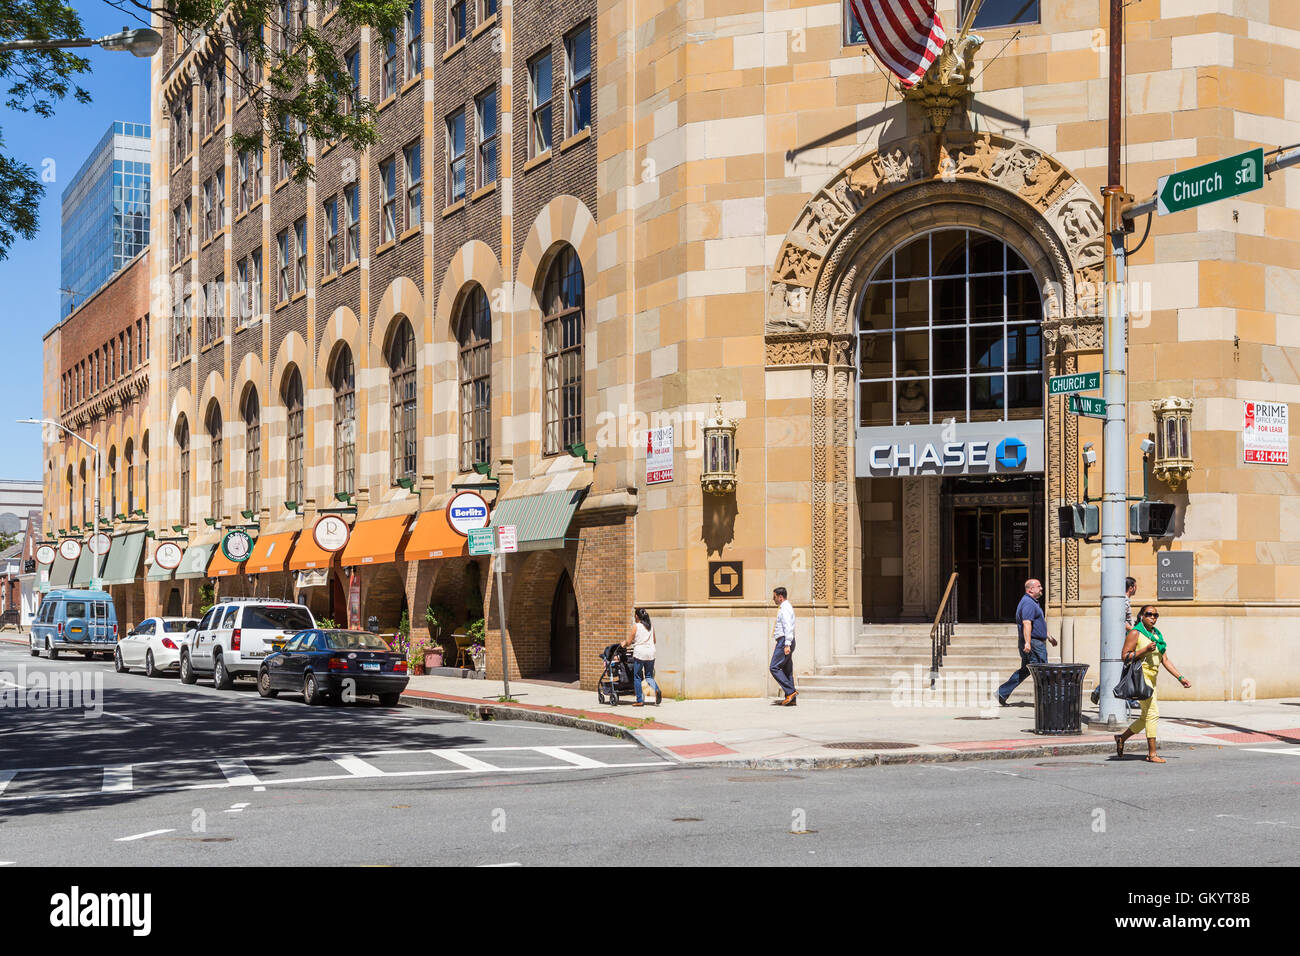 Eine Bankfiliale von Chase und Geschäfte entlang der Church Street besetzen das historische Gebäude der Anwälte in der Innenstadt von White Plains, New York. Stockfoto